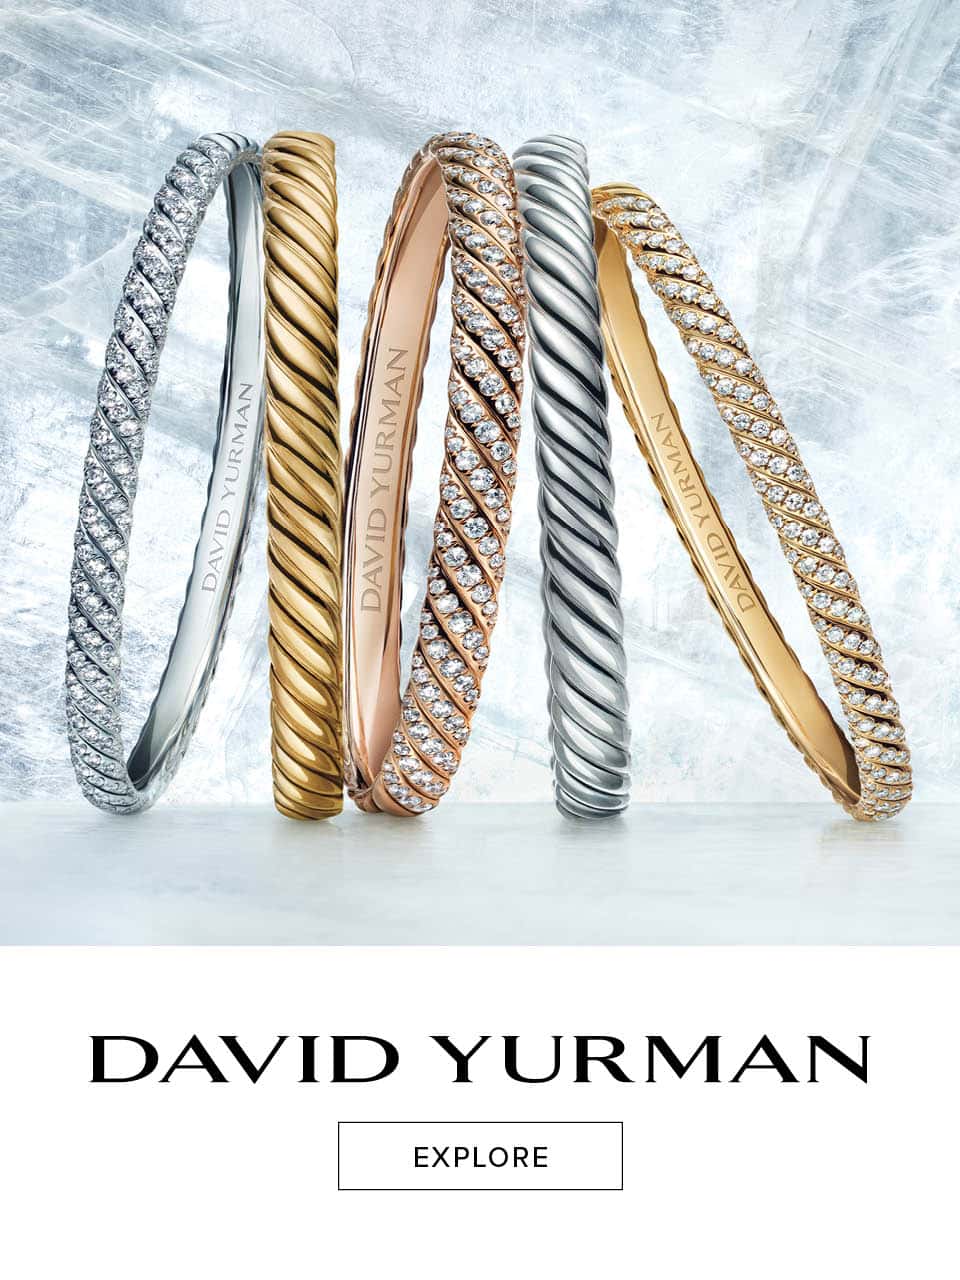 David Yurman Jewelry at Mann's